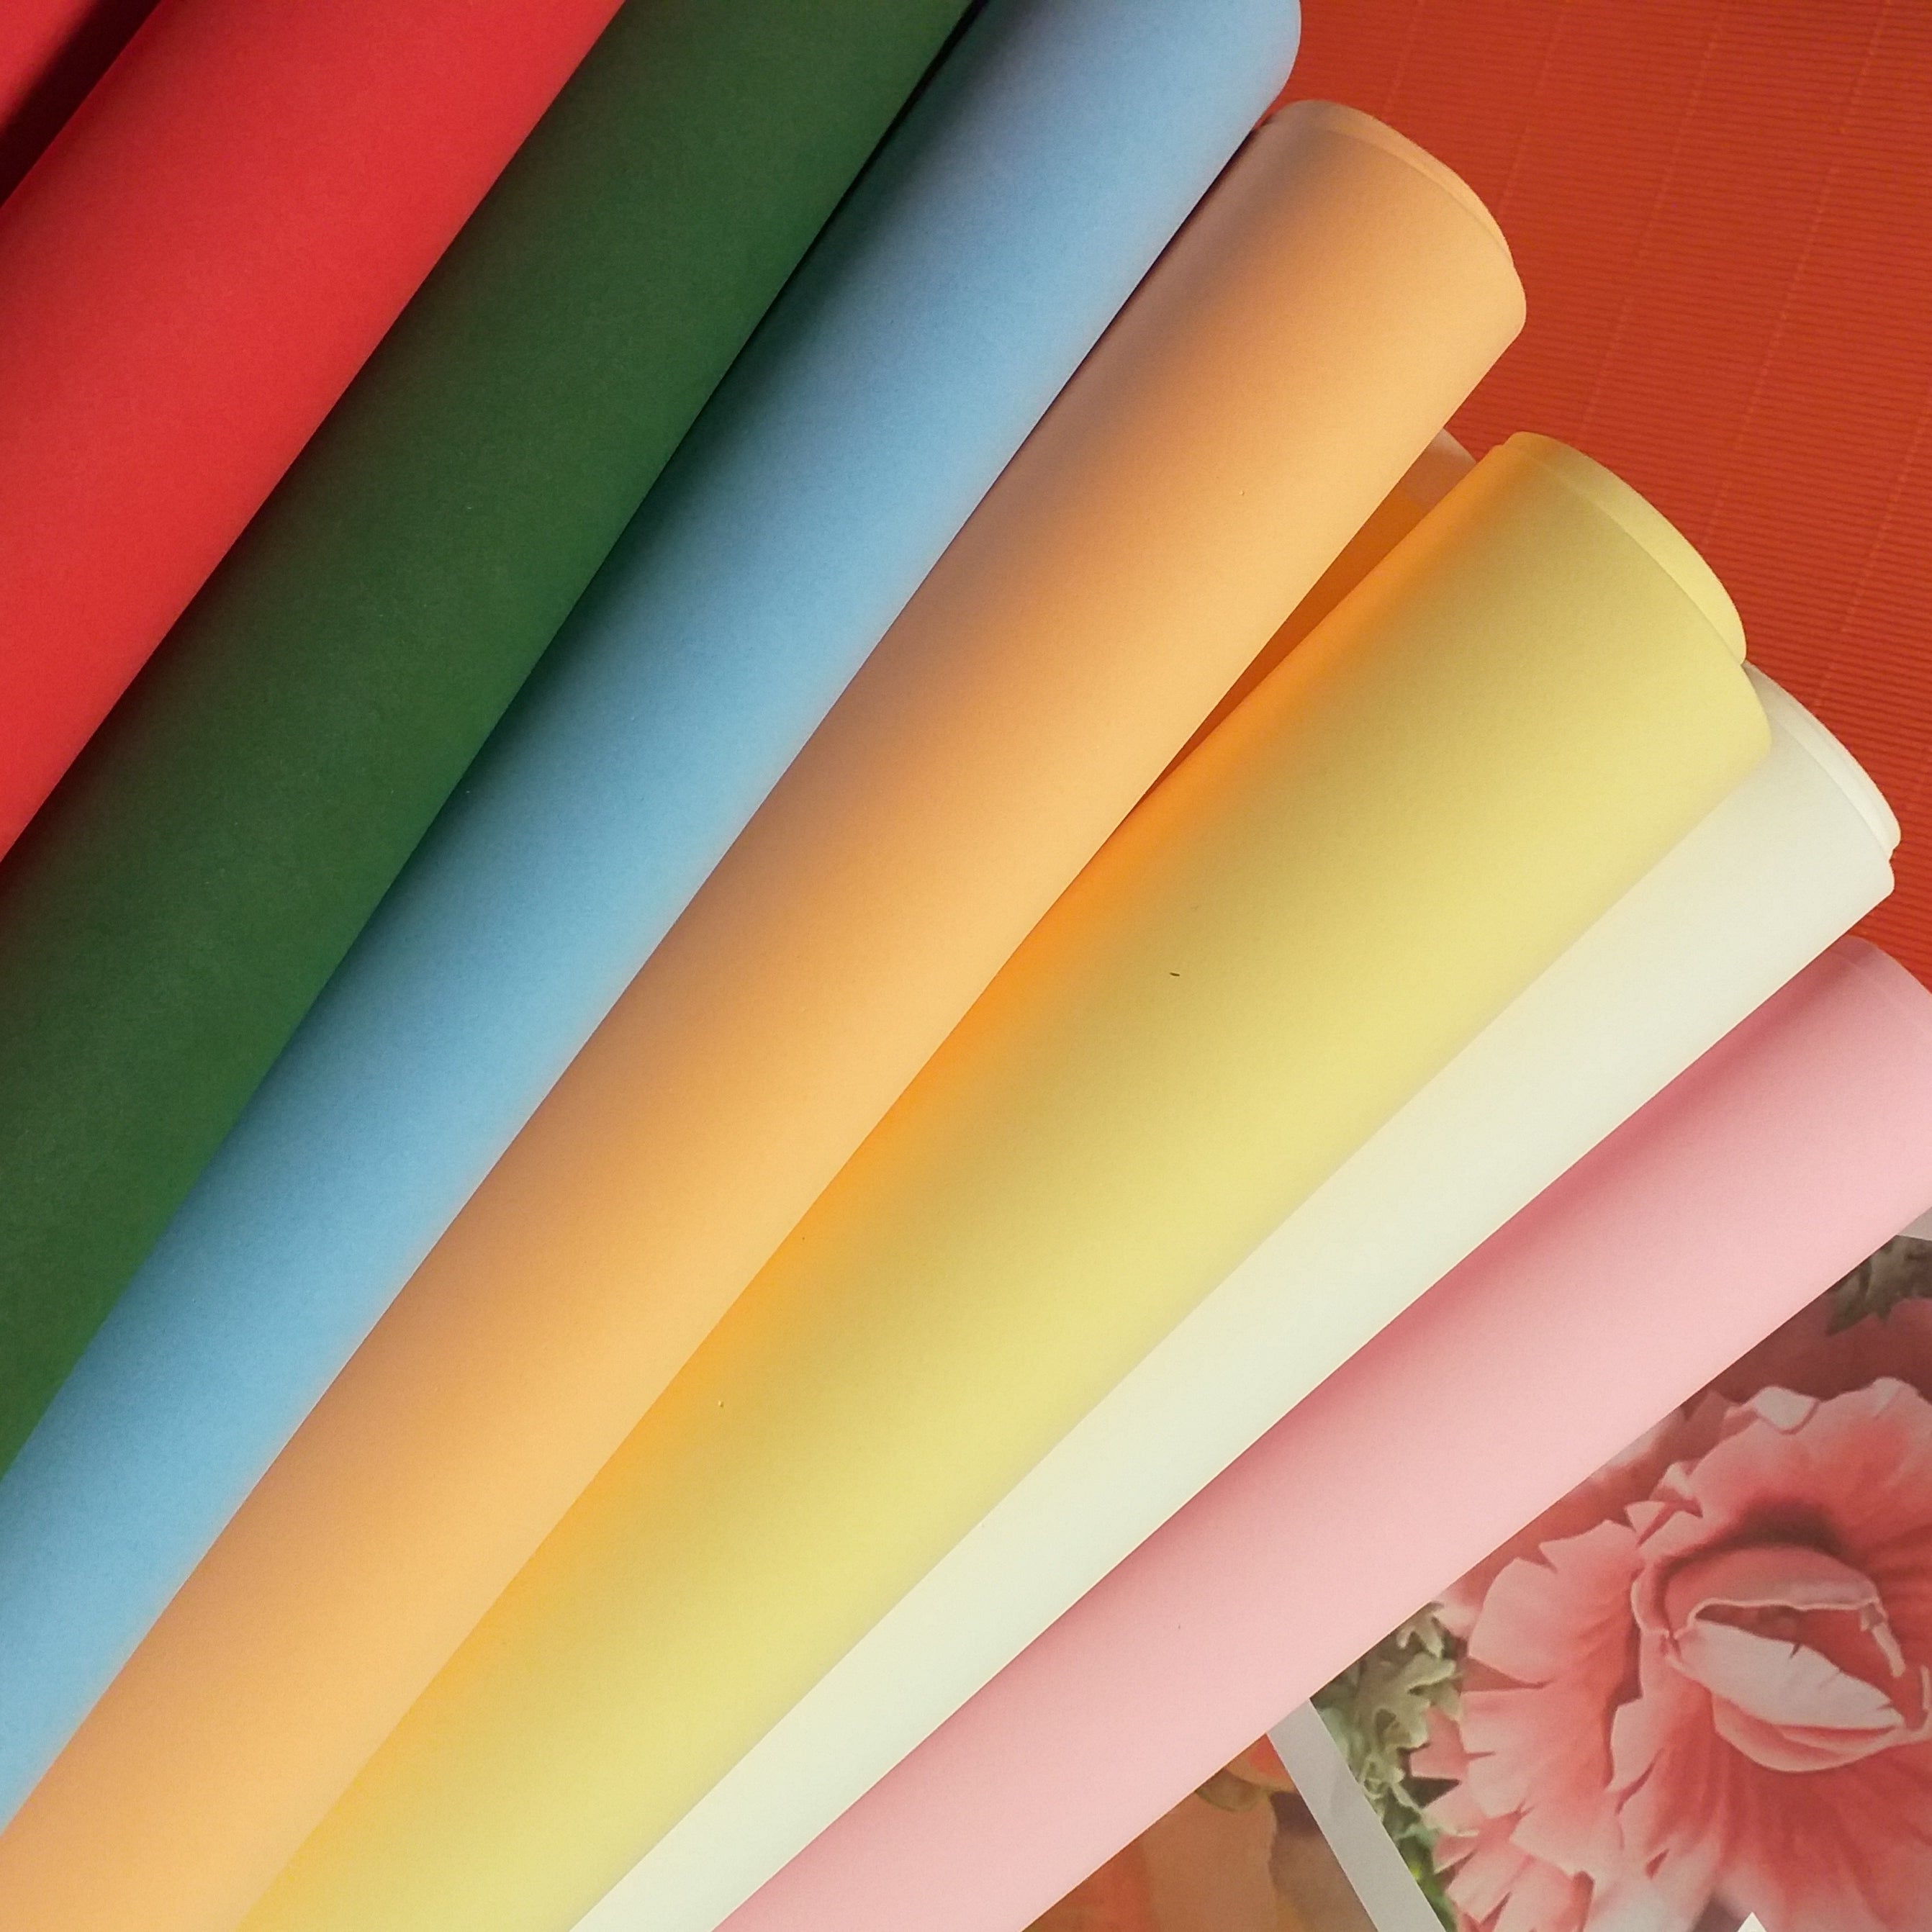 Cuori adesivi colorati di gomma eva per 1,75 €